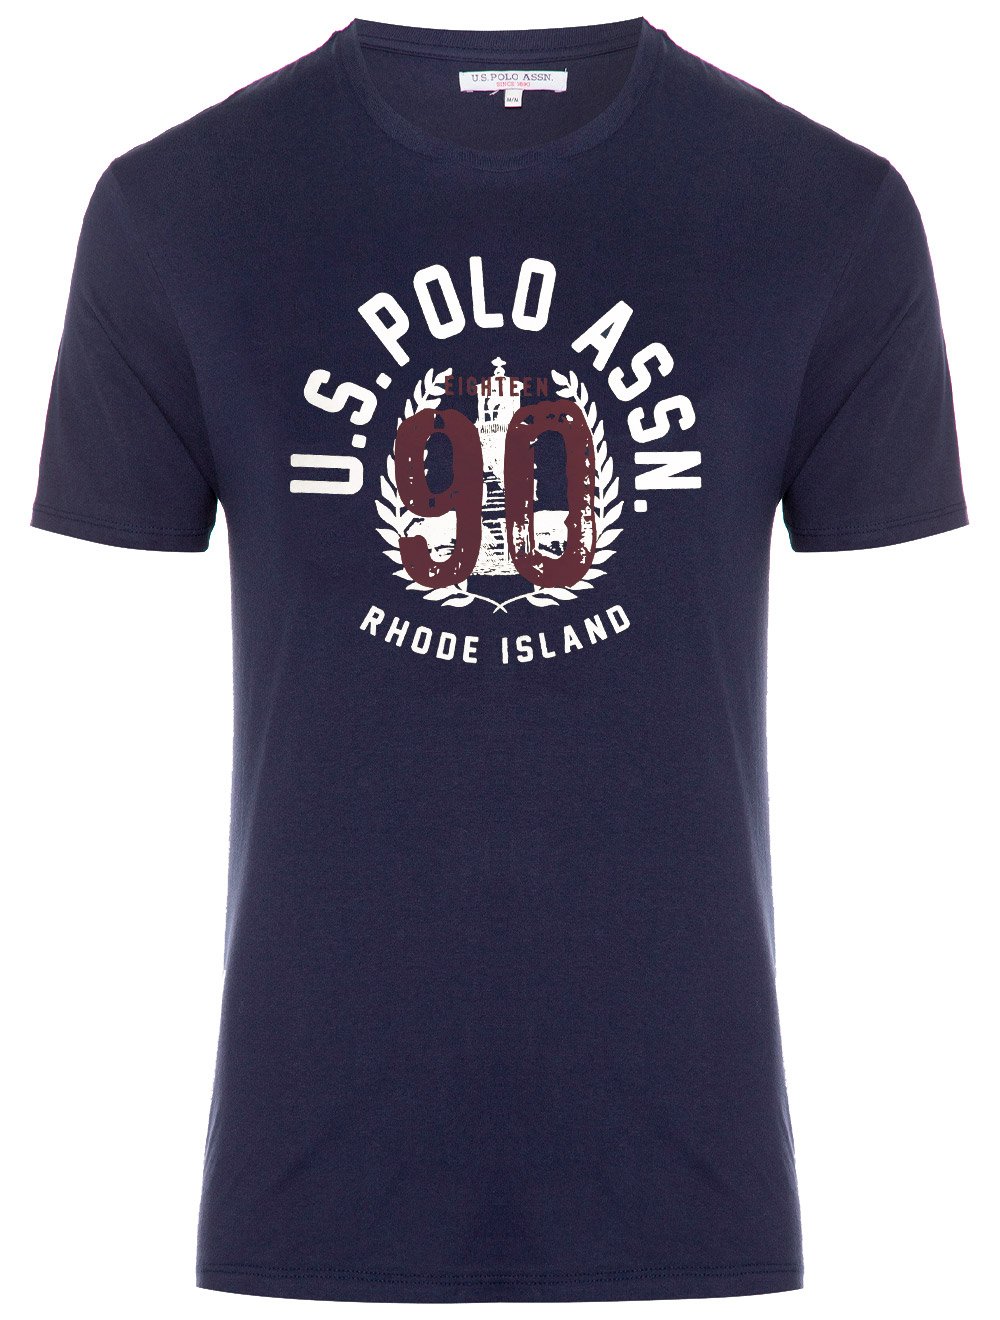 Camiseta U.S. Polo Assn Crewneck Side Graphic Azul Marinho